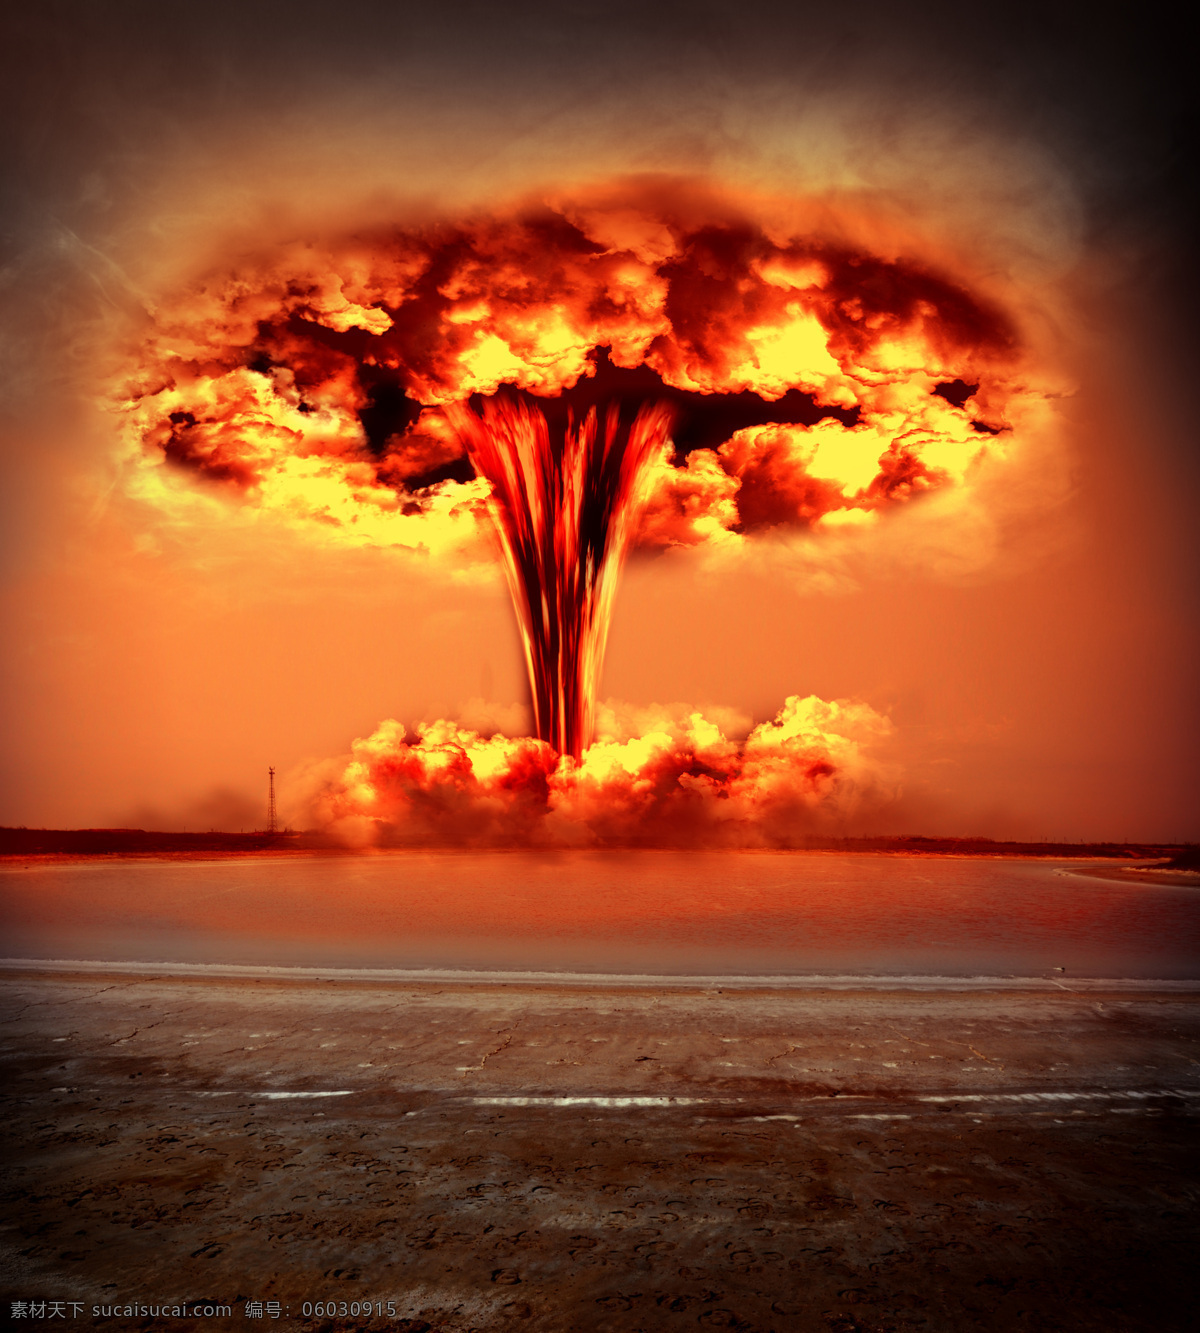 原子弹 爆炸 氢弹爆炸 火焰 火苗 原子弹爆炸 核爆炸 军事武器 现代科技